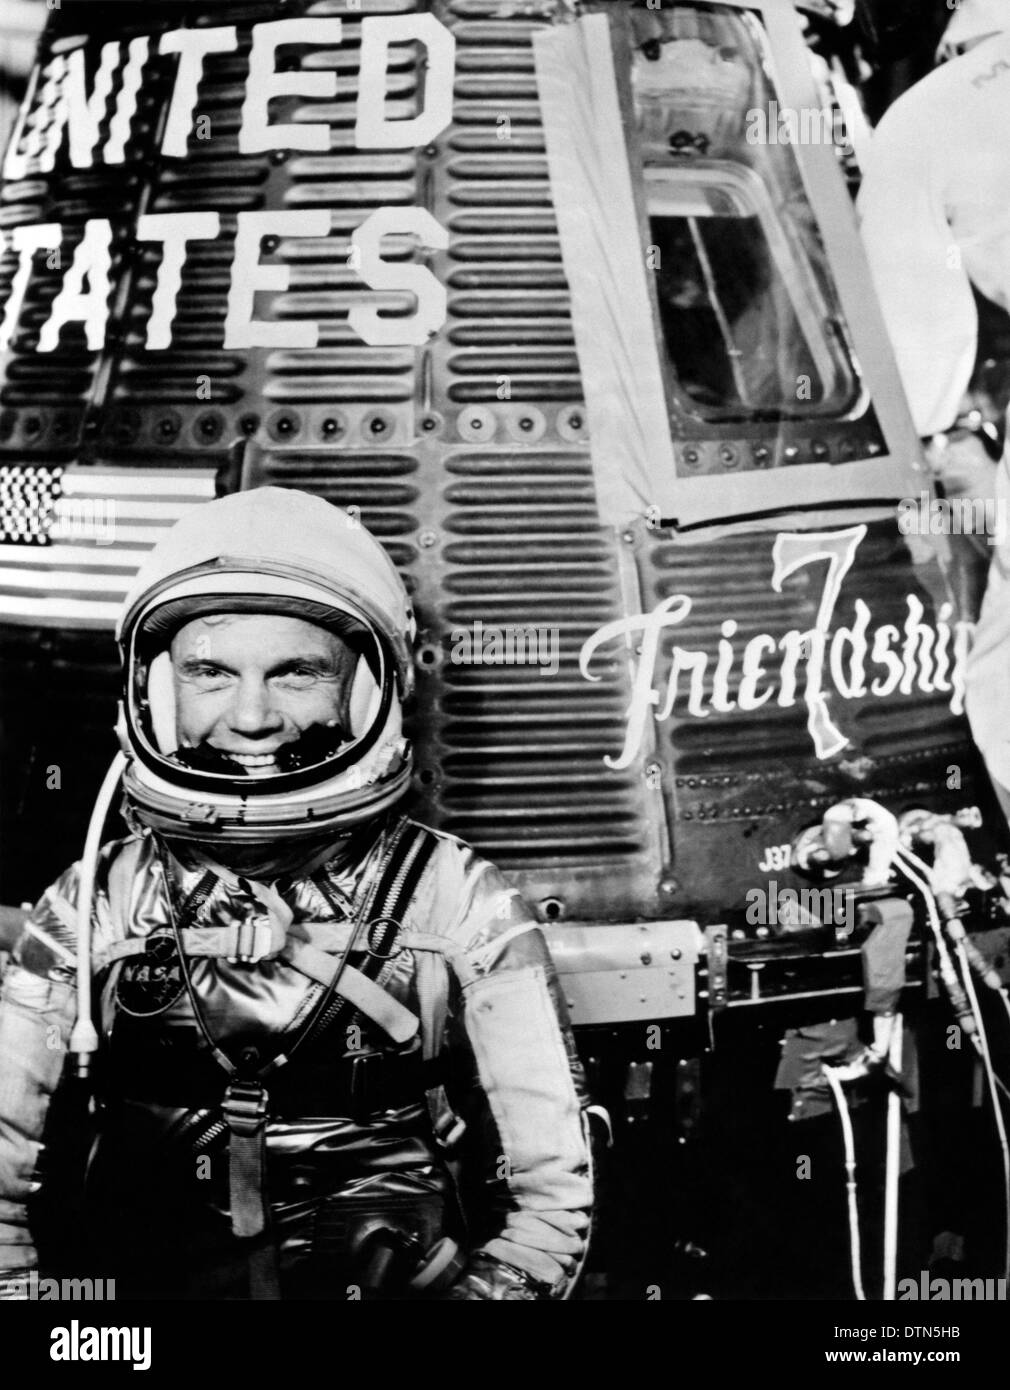 US-Astronaut John Glenn Jr., Pilot der Mercury-Atlas 6 Raumfahrt, posiert für ein Foto mit dem Quecksilber "Friendship 7" Raumschiff während Preflight-Aktivitäten Februar 1962 auf dem Kennedy Space Center, Florida. Glenn pilotiert das Raumschiff auf dem ersten bemannten Orbital Mission der Vereinigten Staaten eine erfolgreiche Mission der drei-Umlaufbahn um die Erde am 20. Februar 1962 abgeschlossen. Stockfoto